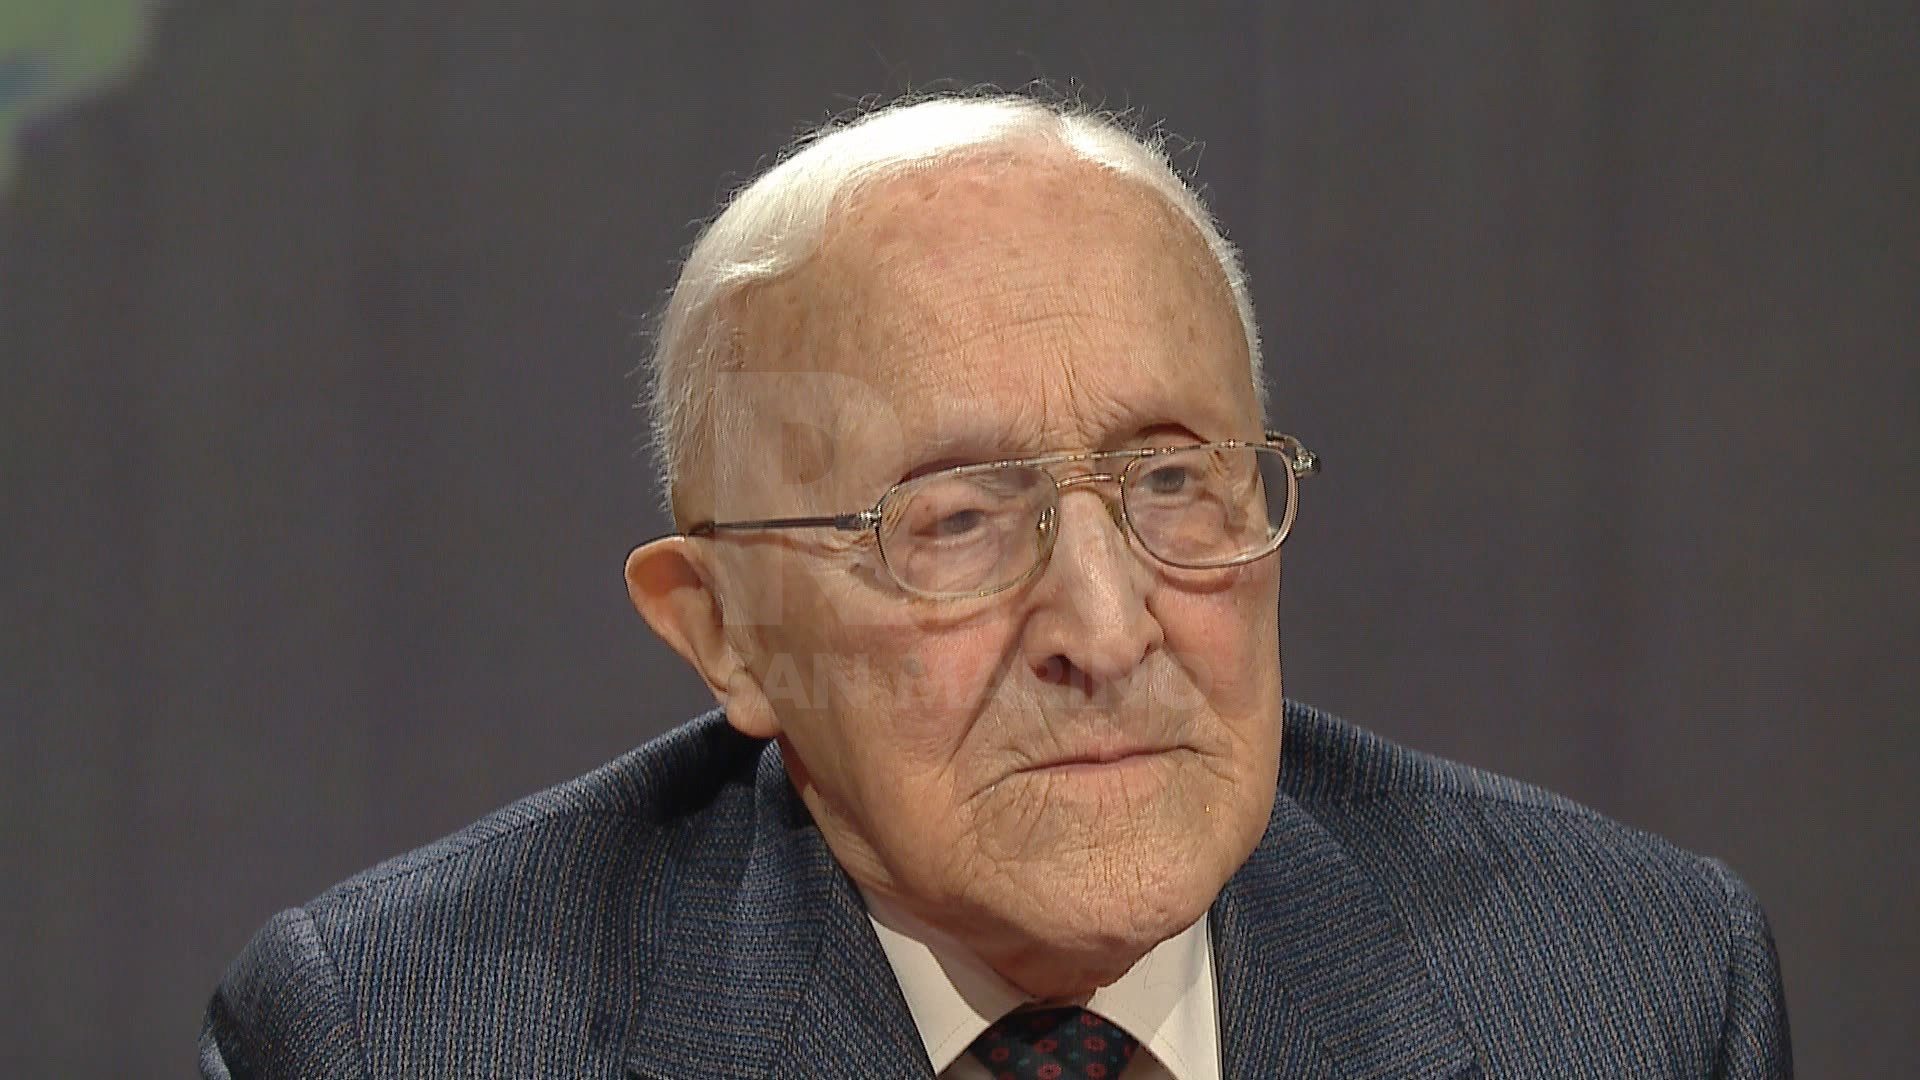 Addio a Sergio Lepri, il maestro del giornalismo italiano aveva 102 anni